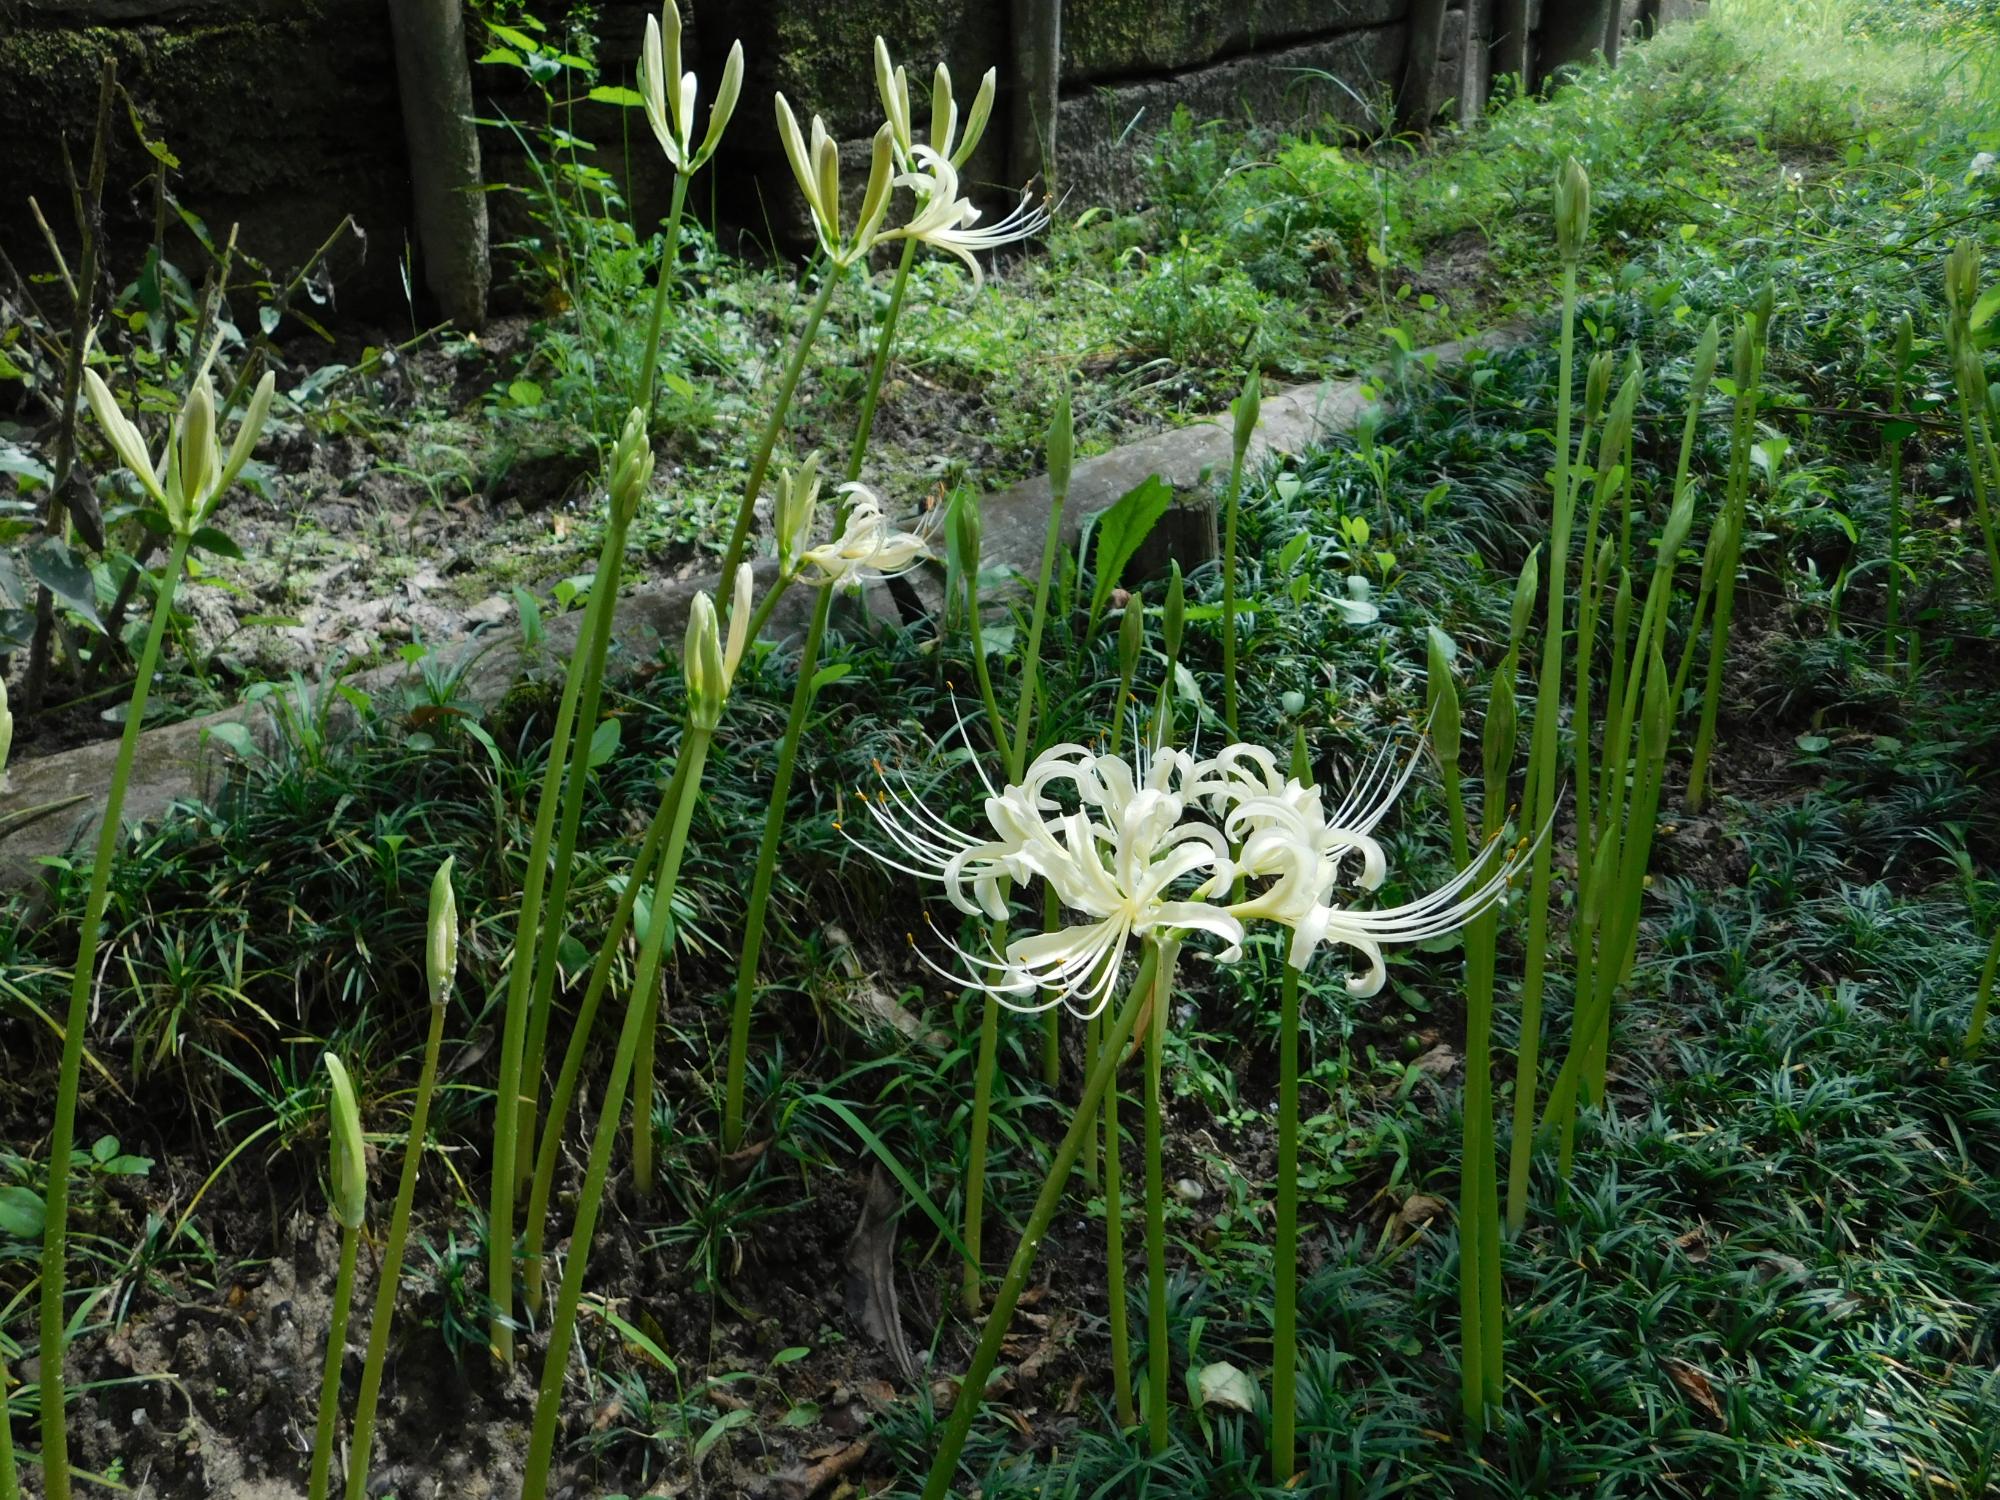 薬草園では、白花ヒガンバナの花が見られるようになりました。ヒガンバナは、秋のお彼岸の頃に咲く花として知られています。